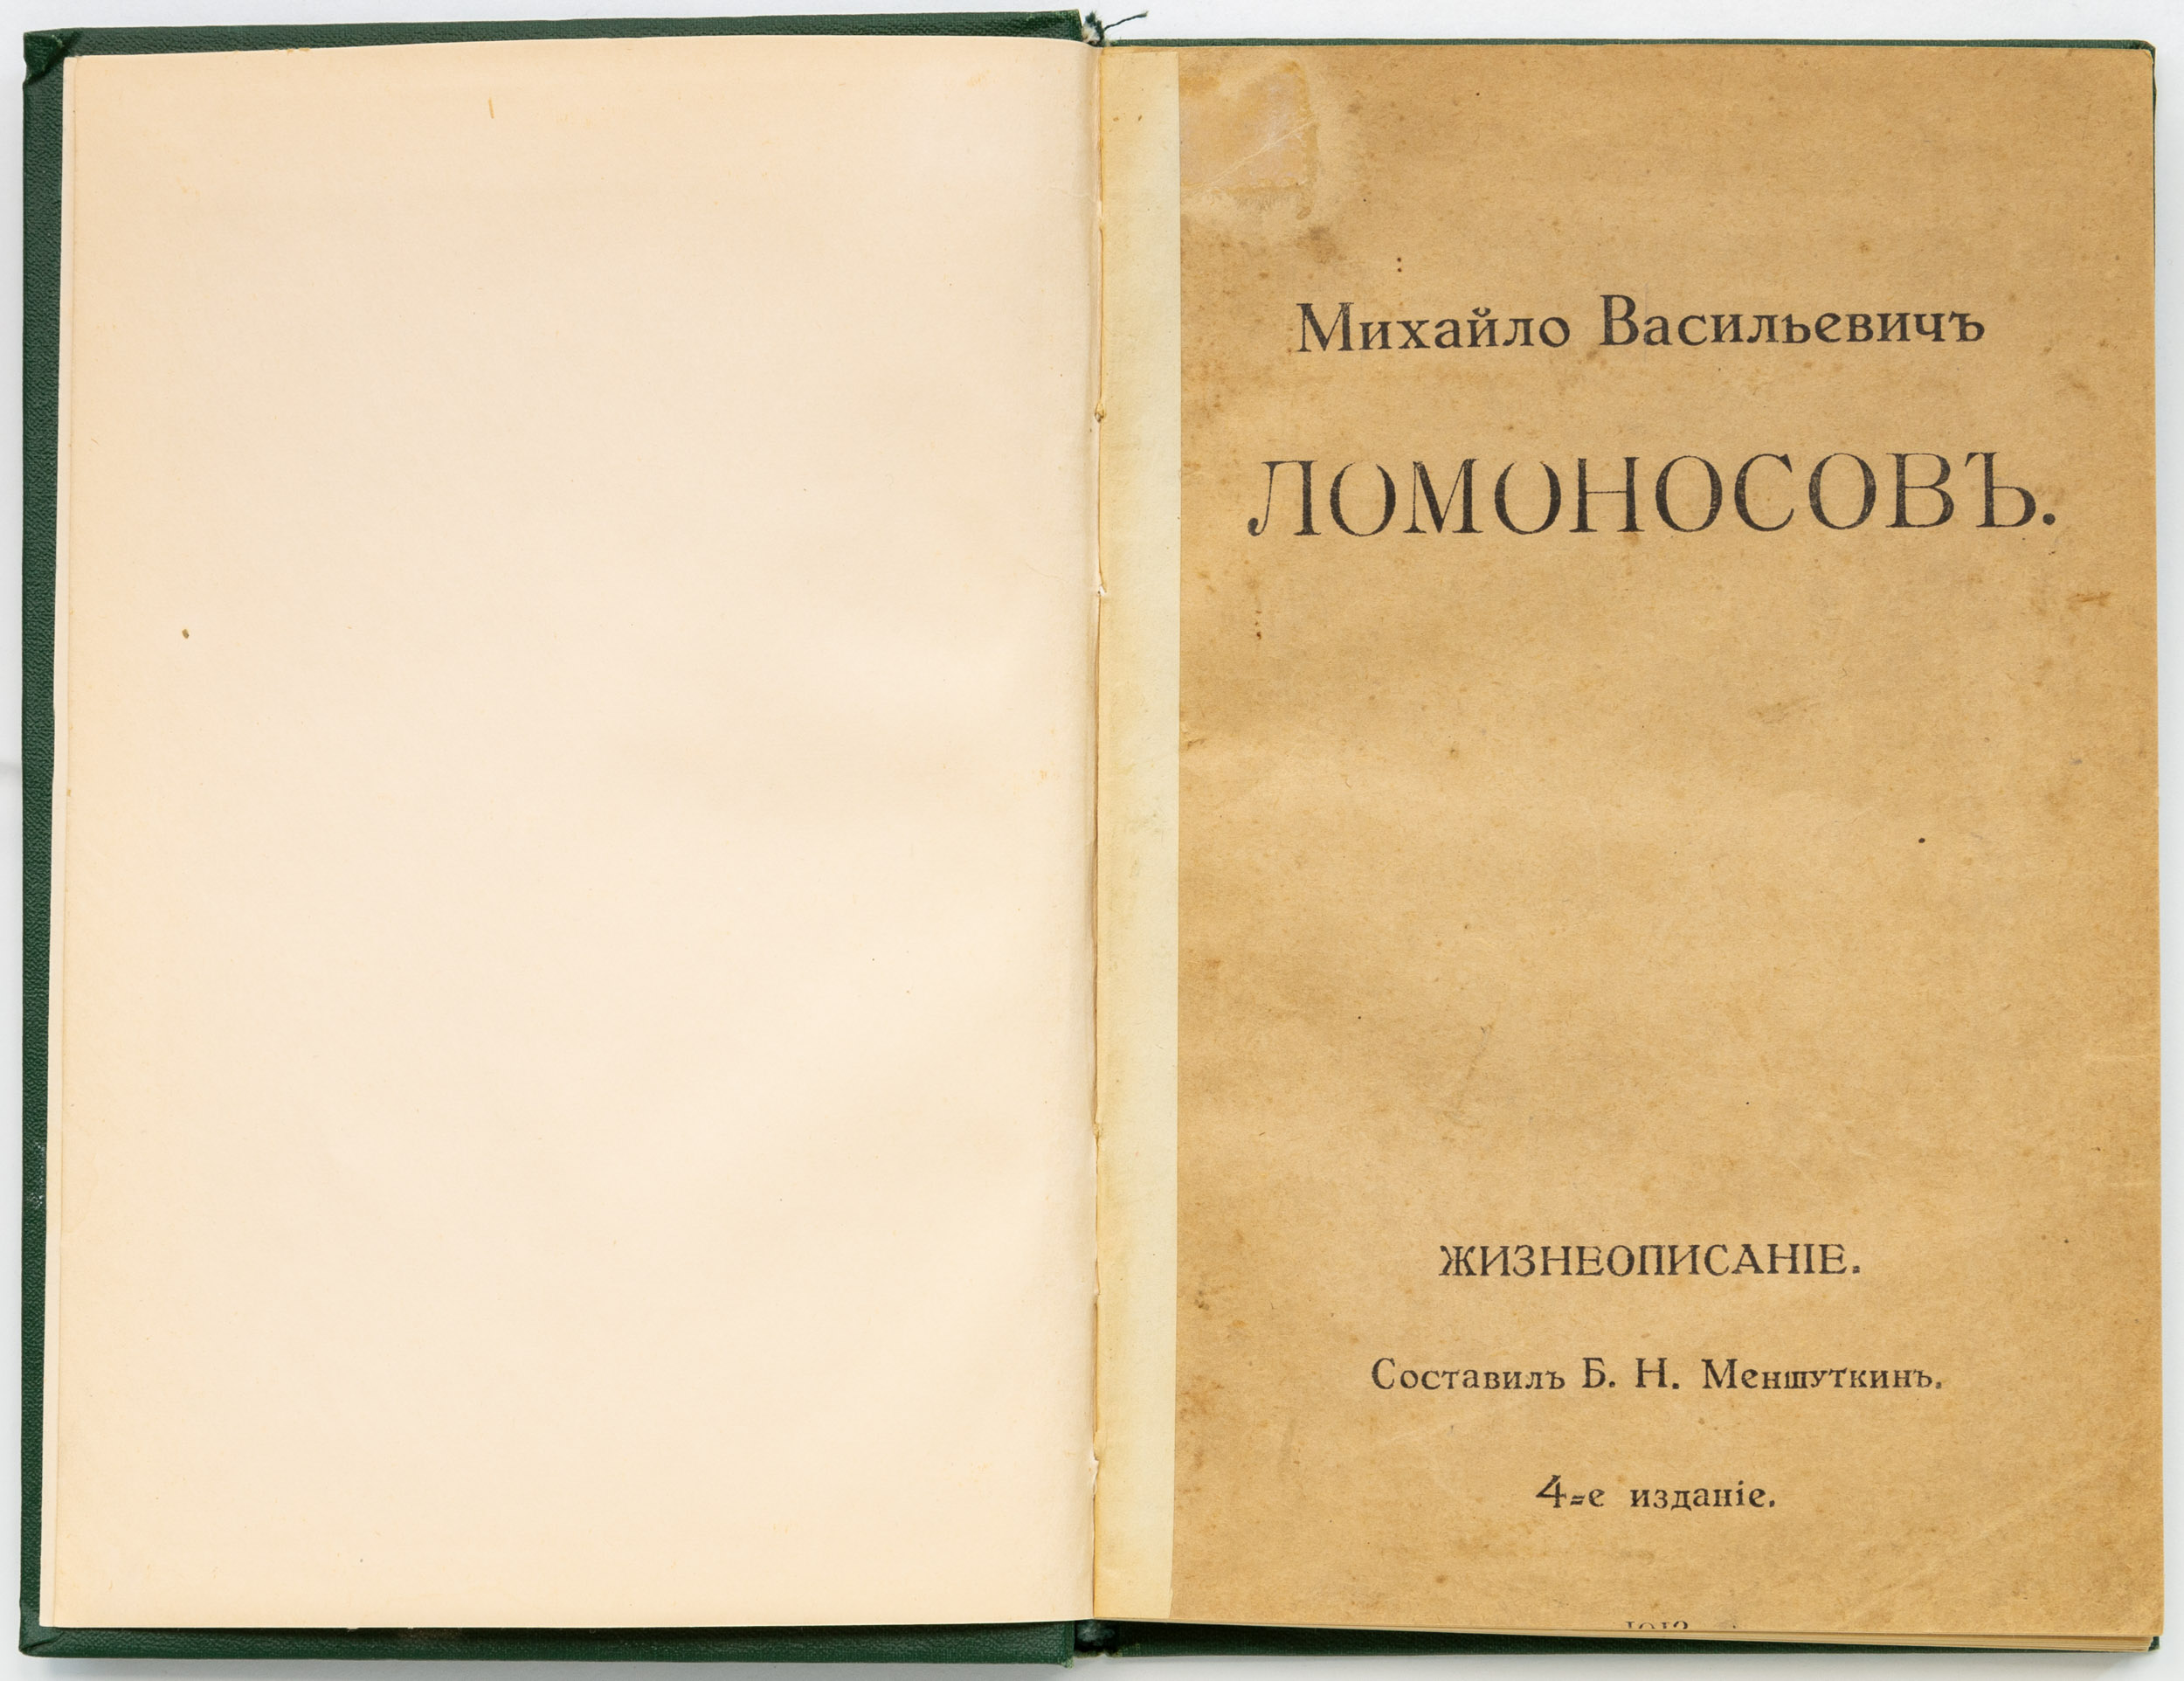 Меншуткин, Б.Н. Михайло Васильевич Ломоносов. Жизнеописание. 4-е изд.